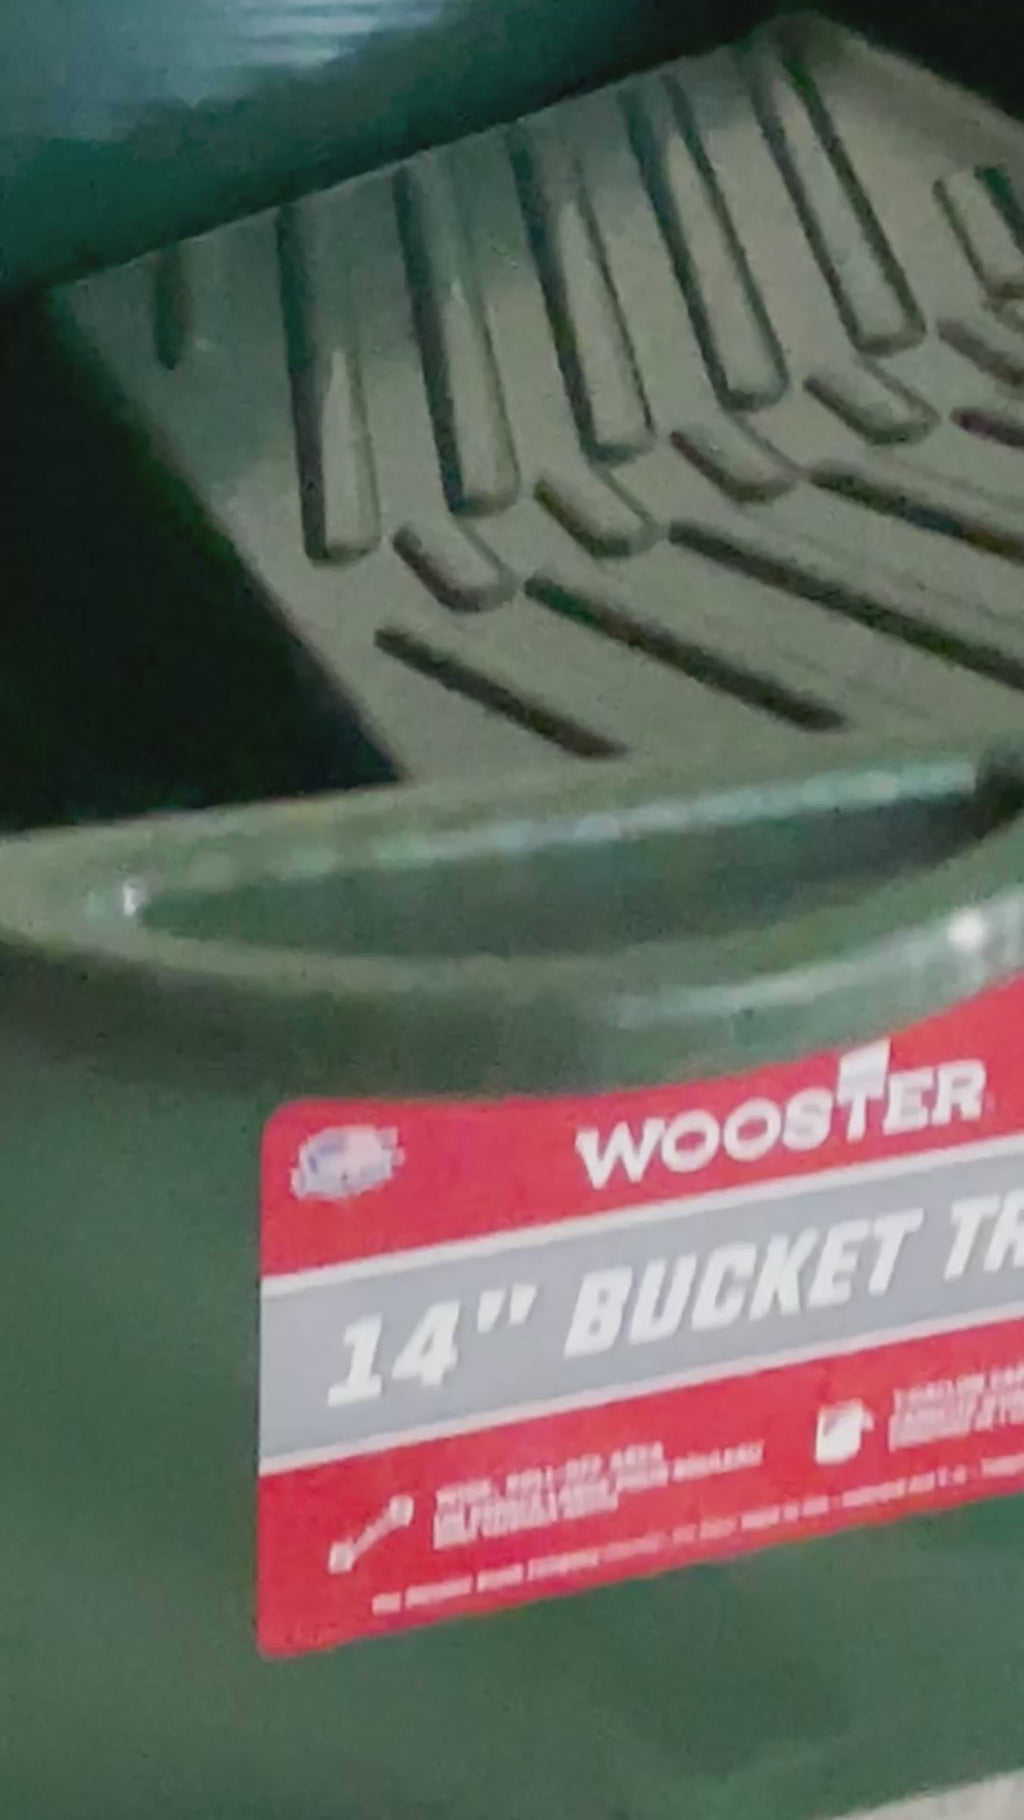 Wooster BR414-14 Sherlock Bucket Tray - video